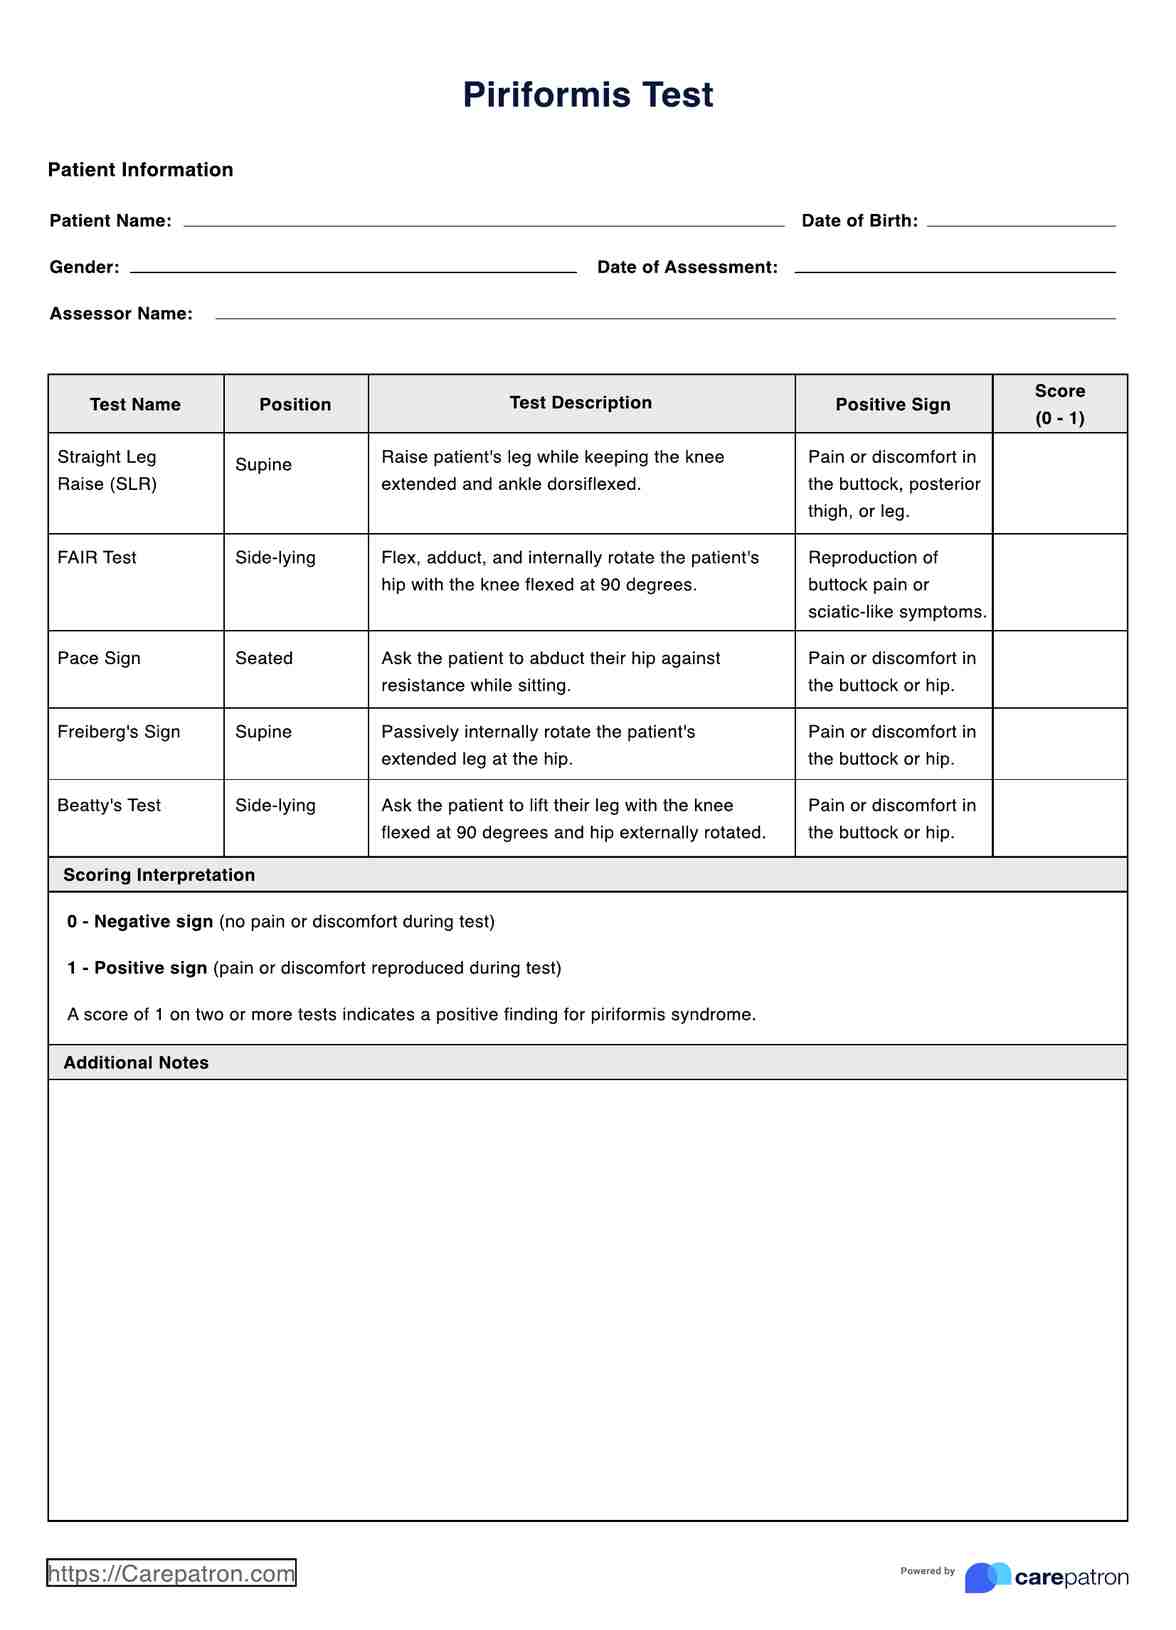 Piriformis Syndrome Test PDF Example